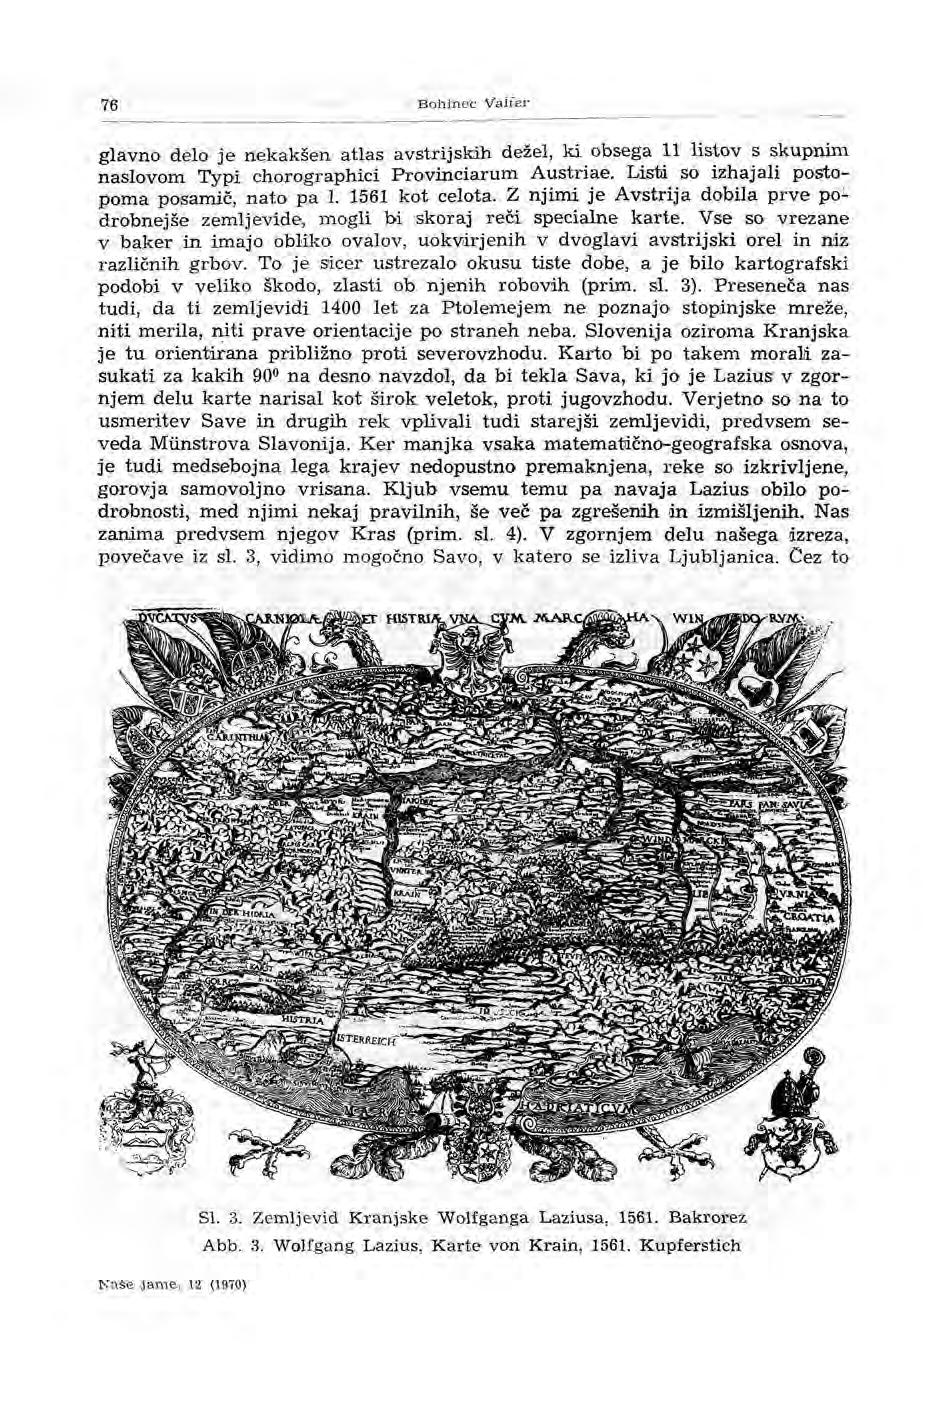 76 Bohinec Vaffer glavno delo je nekakšen atlas avstrijskih dežel, ki obsega 11 listov s skupnim naslovom Typi chorographici Provinciarum Austriae. Listi so izhajali postopoma posamič, nato pa l.